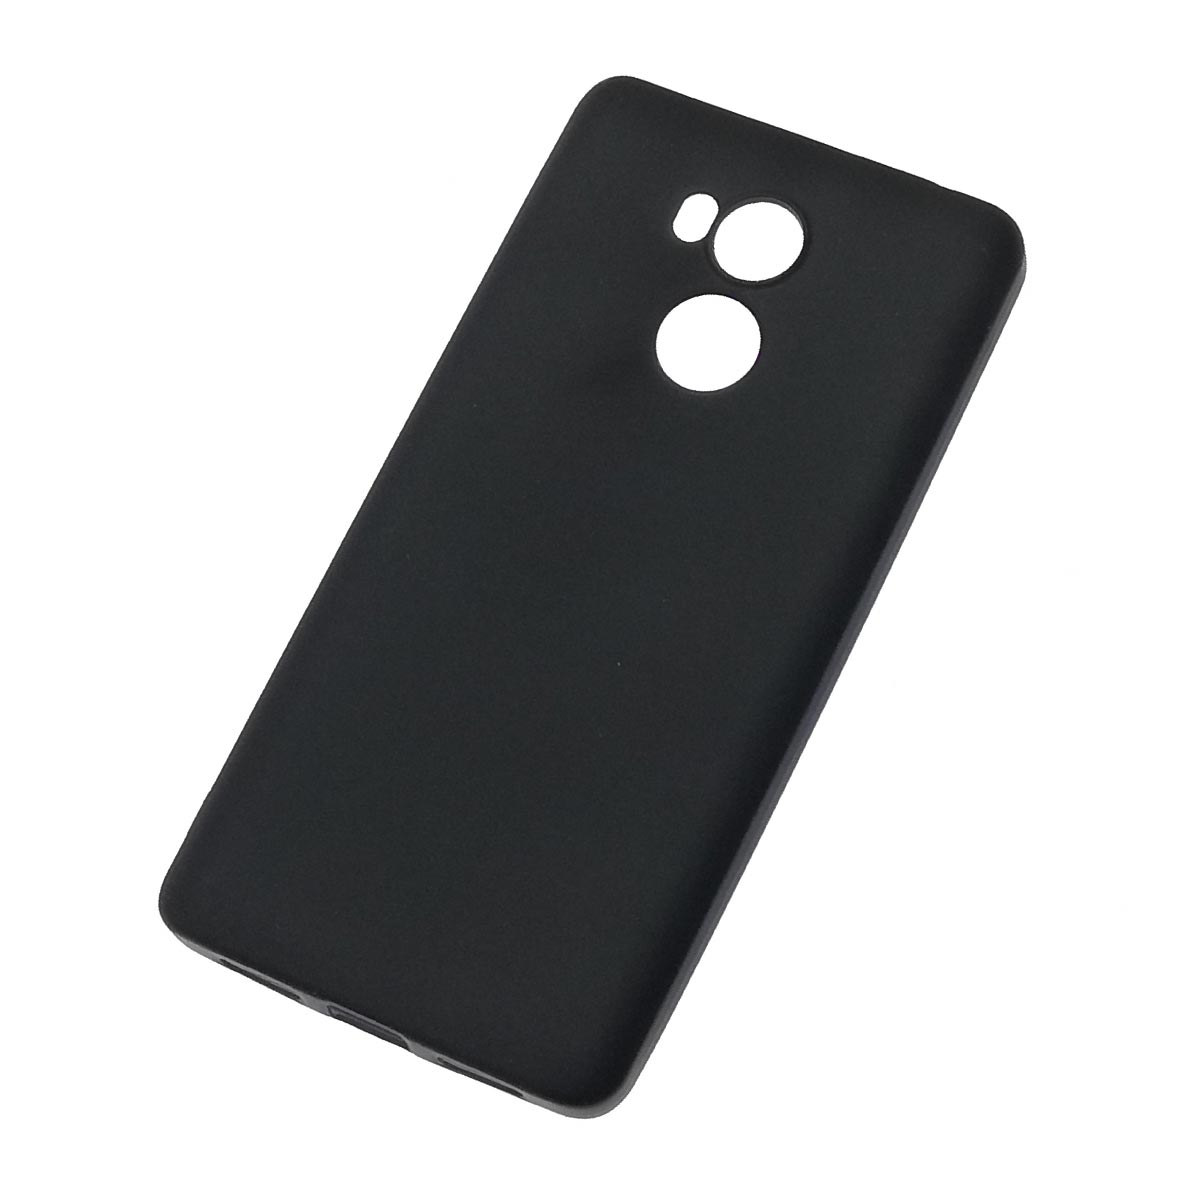 Чехол накладка для XIAOMI Redmi 4 Pro, силикон, цвет черный.